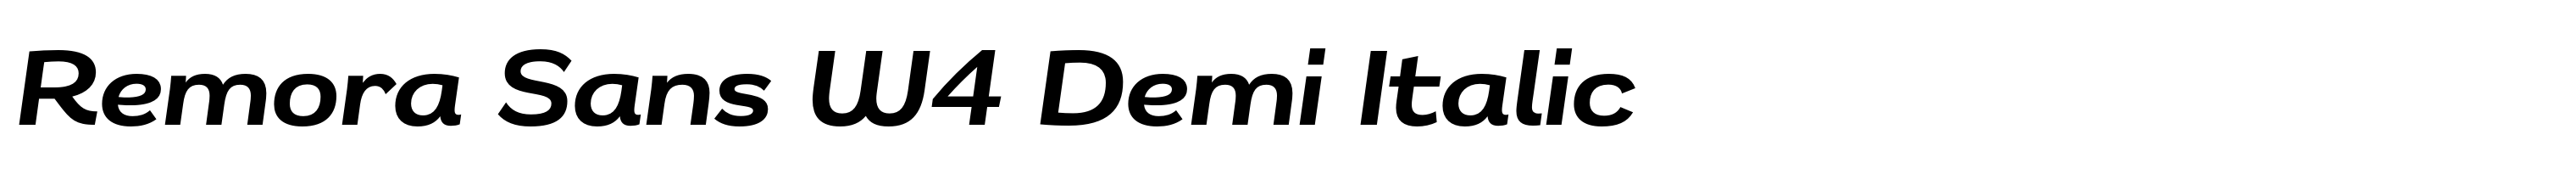 Remora Sans W4 Demi Italic